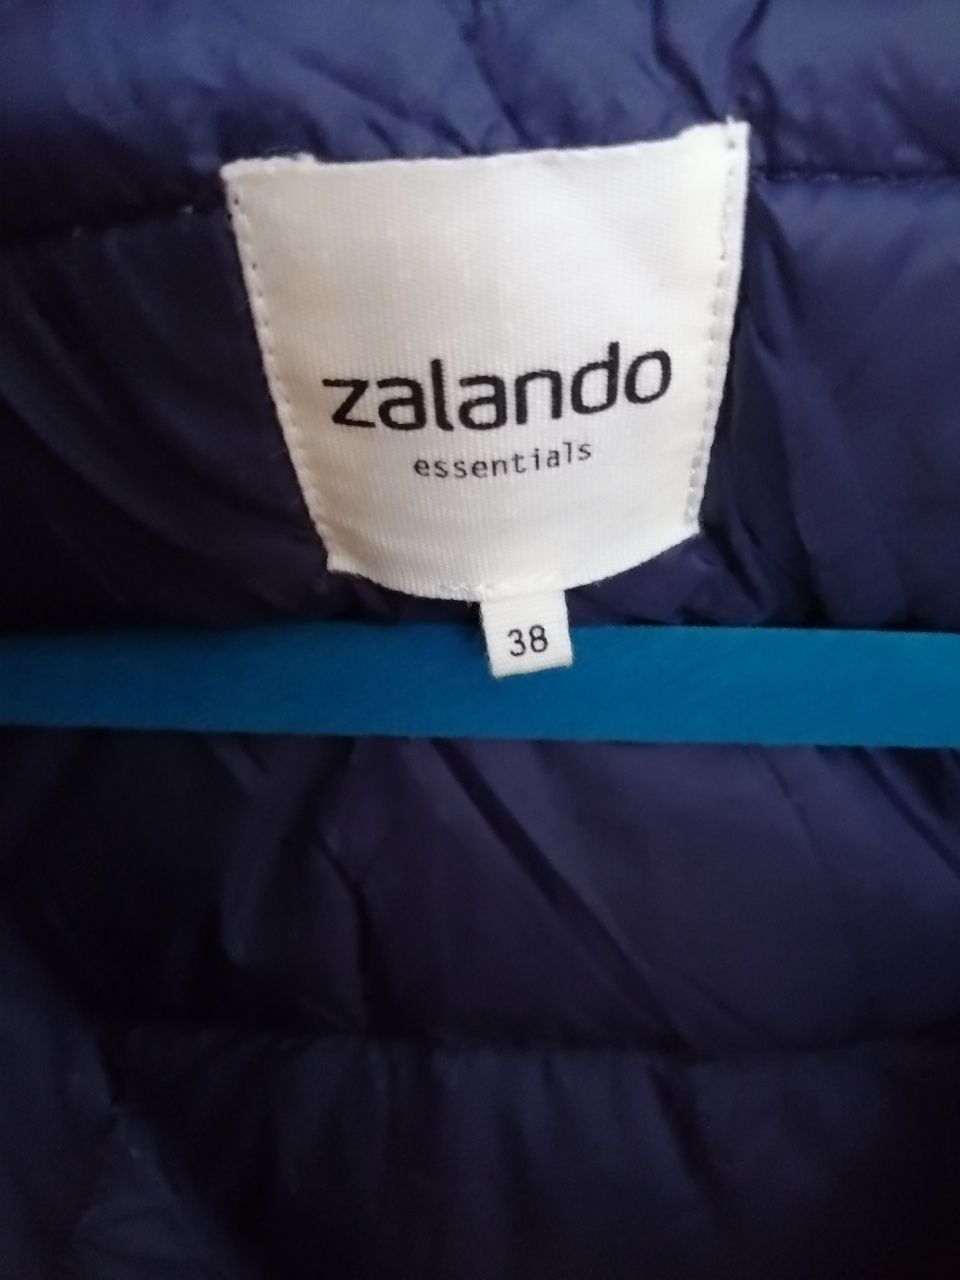 Kurtka z kapturem  pikowana, Zalando Essentials 38